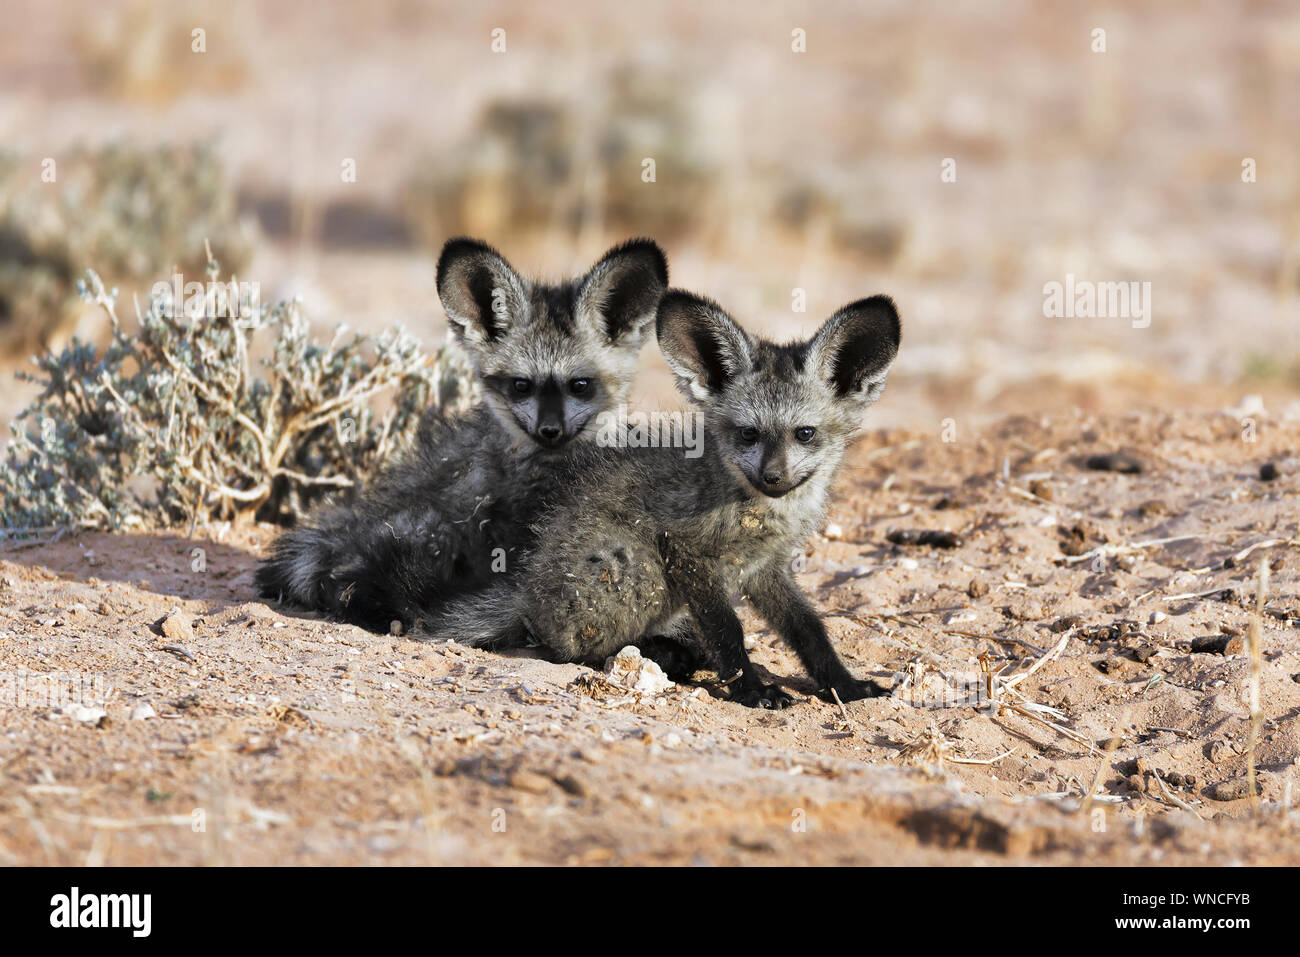 Bat-eared Fox cuccioli a sua den fissando nella fotocamera close-up. Kgalagadi, Sud Africa Foto Stock